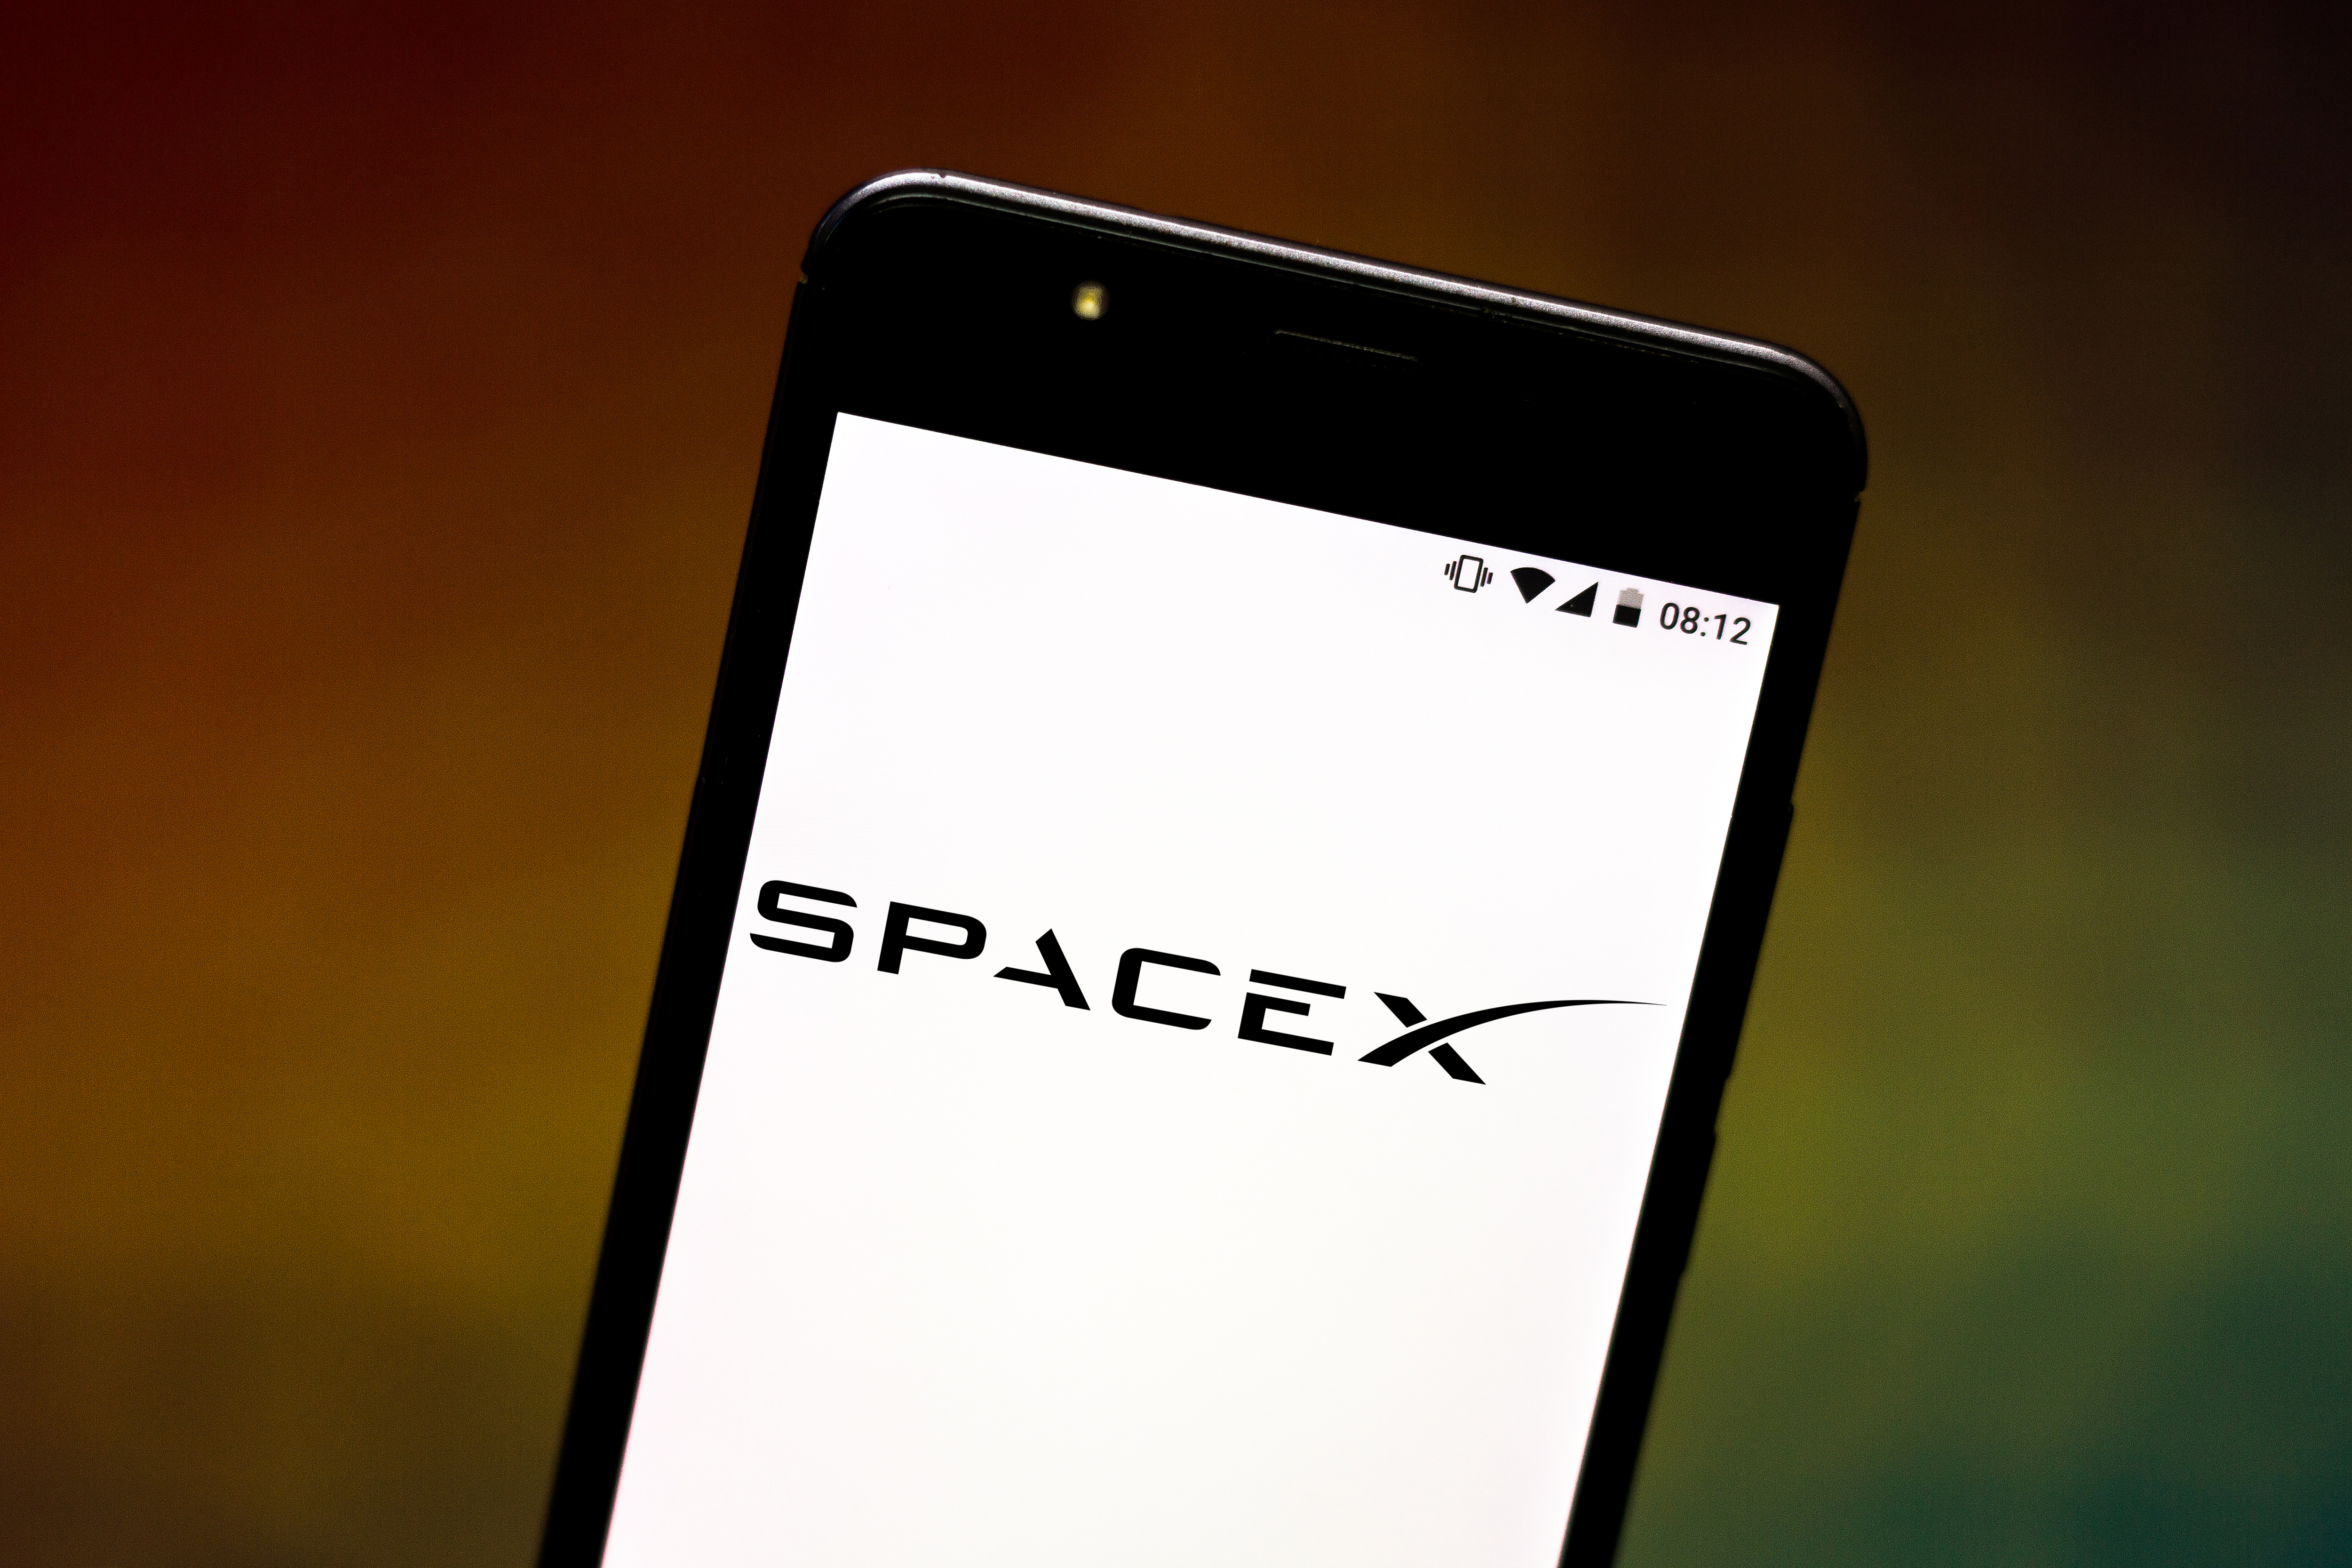 El logotipo de Space X comparte similitudes con el nuevo logotipo de xAI, ya que la 'x' en xAI se asemeja a la 'x' en Space X, siendo ambos diseños limpios y elegantes.